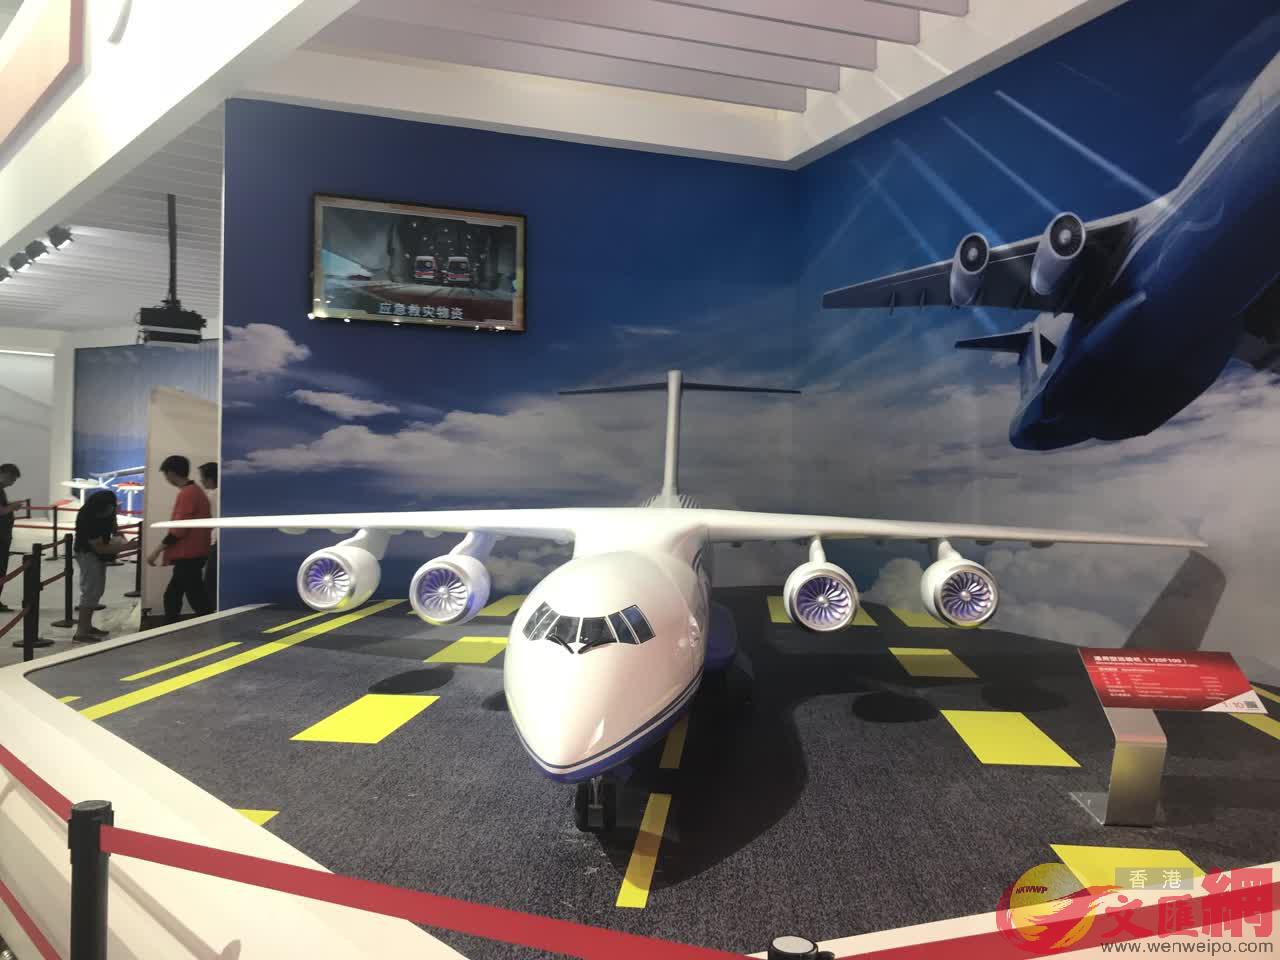 珠海航展中航空工業展館展出的運-20民用版運輸機C]記者劉凝哲攝^